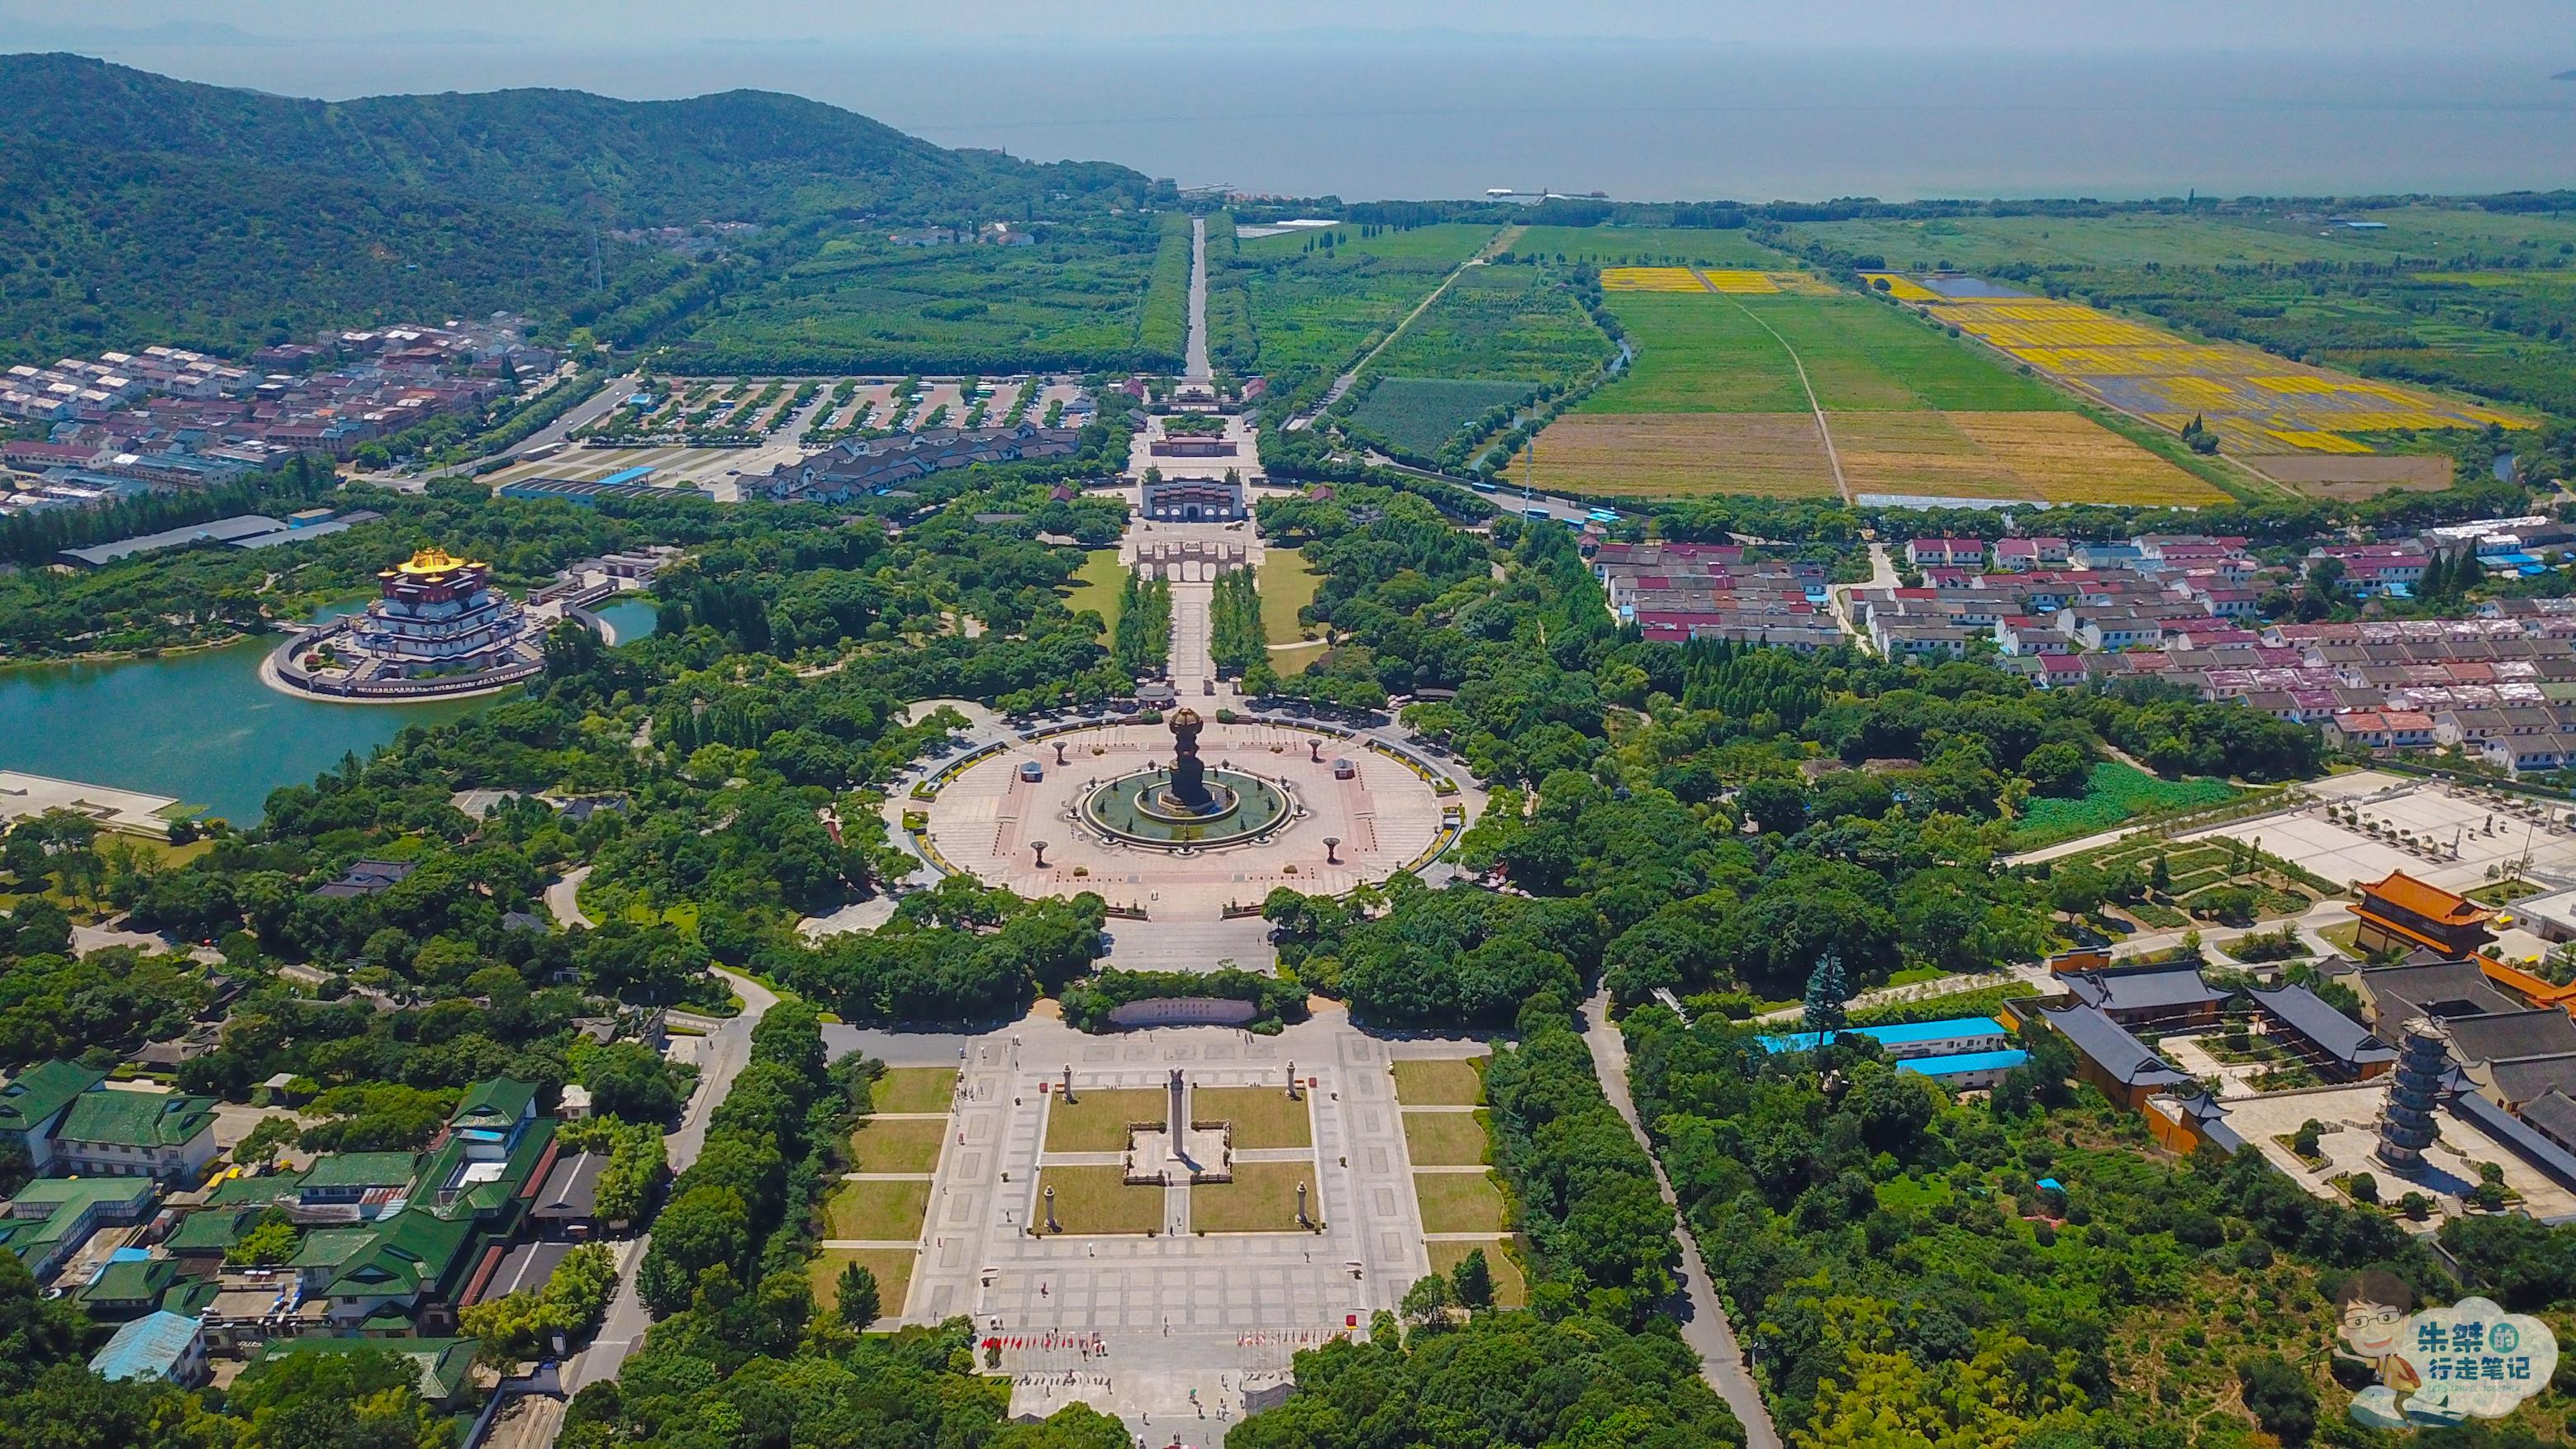 无锡一个世界著名景点 矗立着中国第三高巨型佛像 门票因其而翻倍